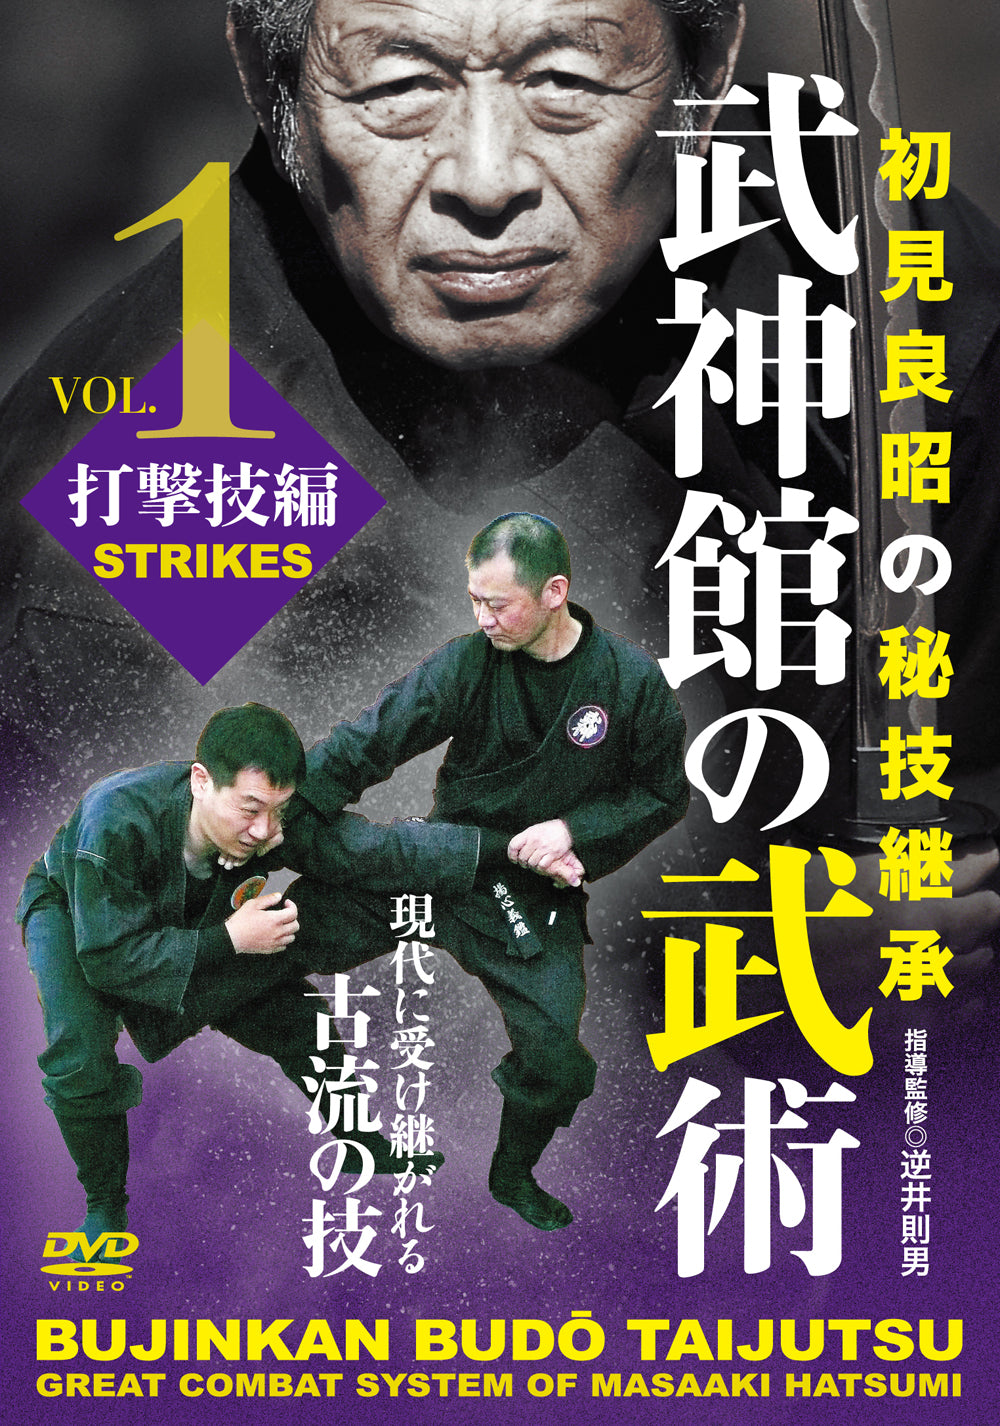 Bujinkan Budo Taijutsu: Gran sistema de combate de Masaaki Hatsumi DVD 1 de Norio Sakasai